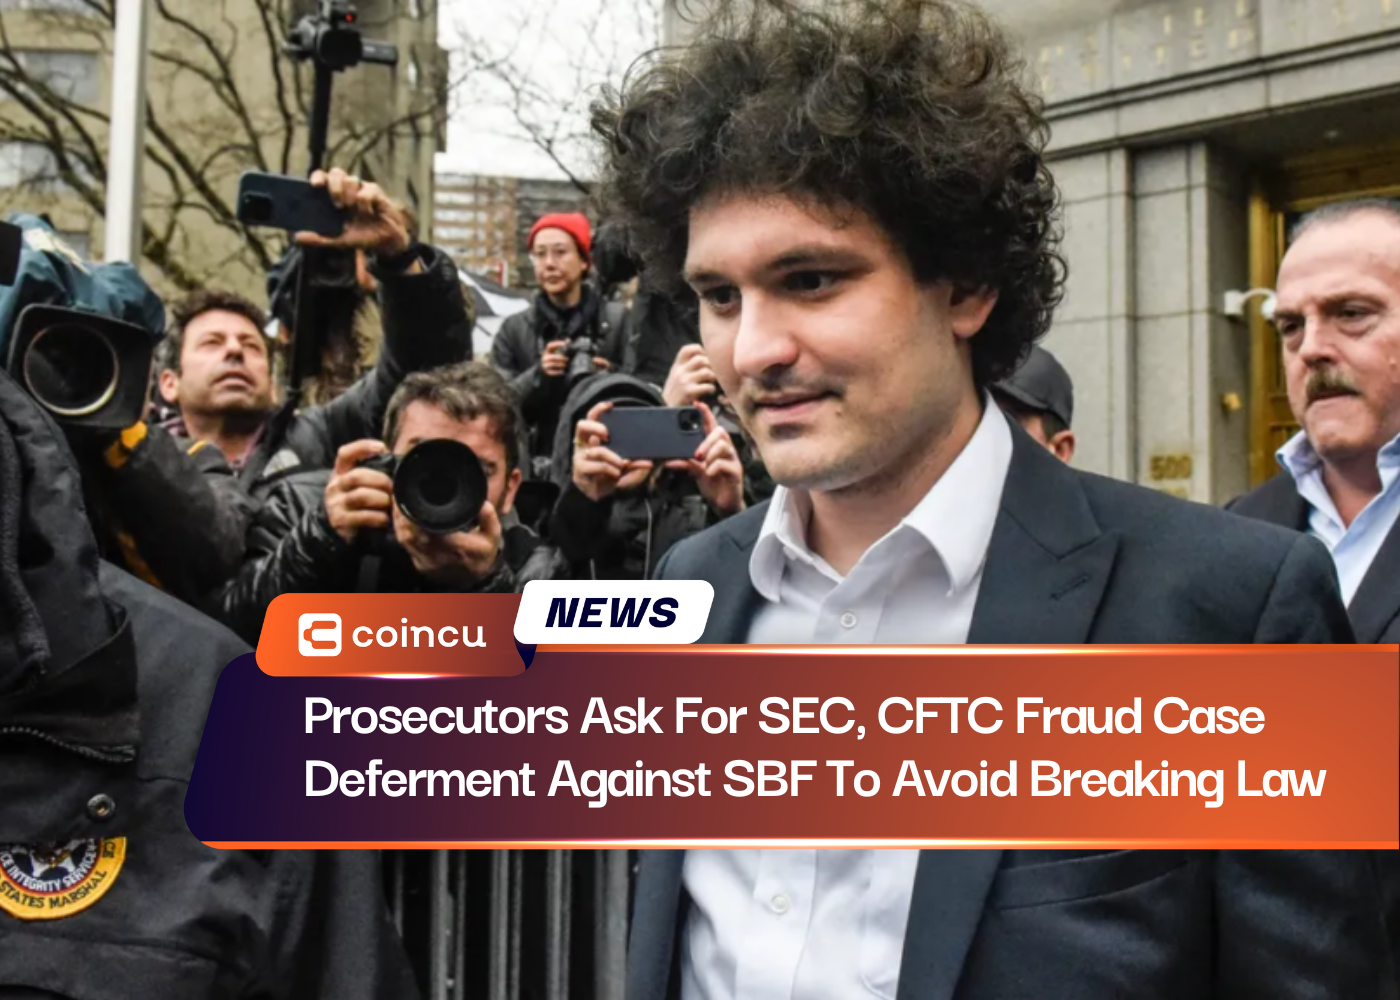 Los fiscales solicitan a la SEC y la CFTC un aplazamiento del caso de fraude contra SBF para evitar infringir la ley